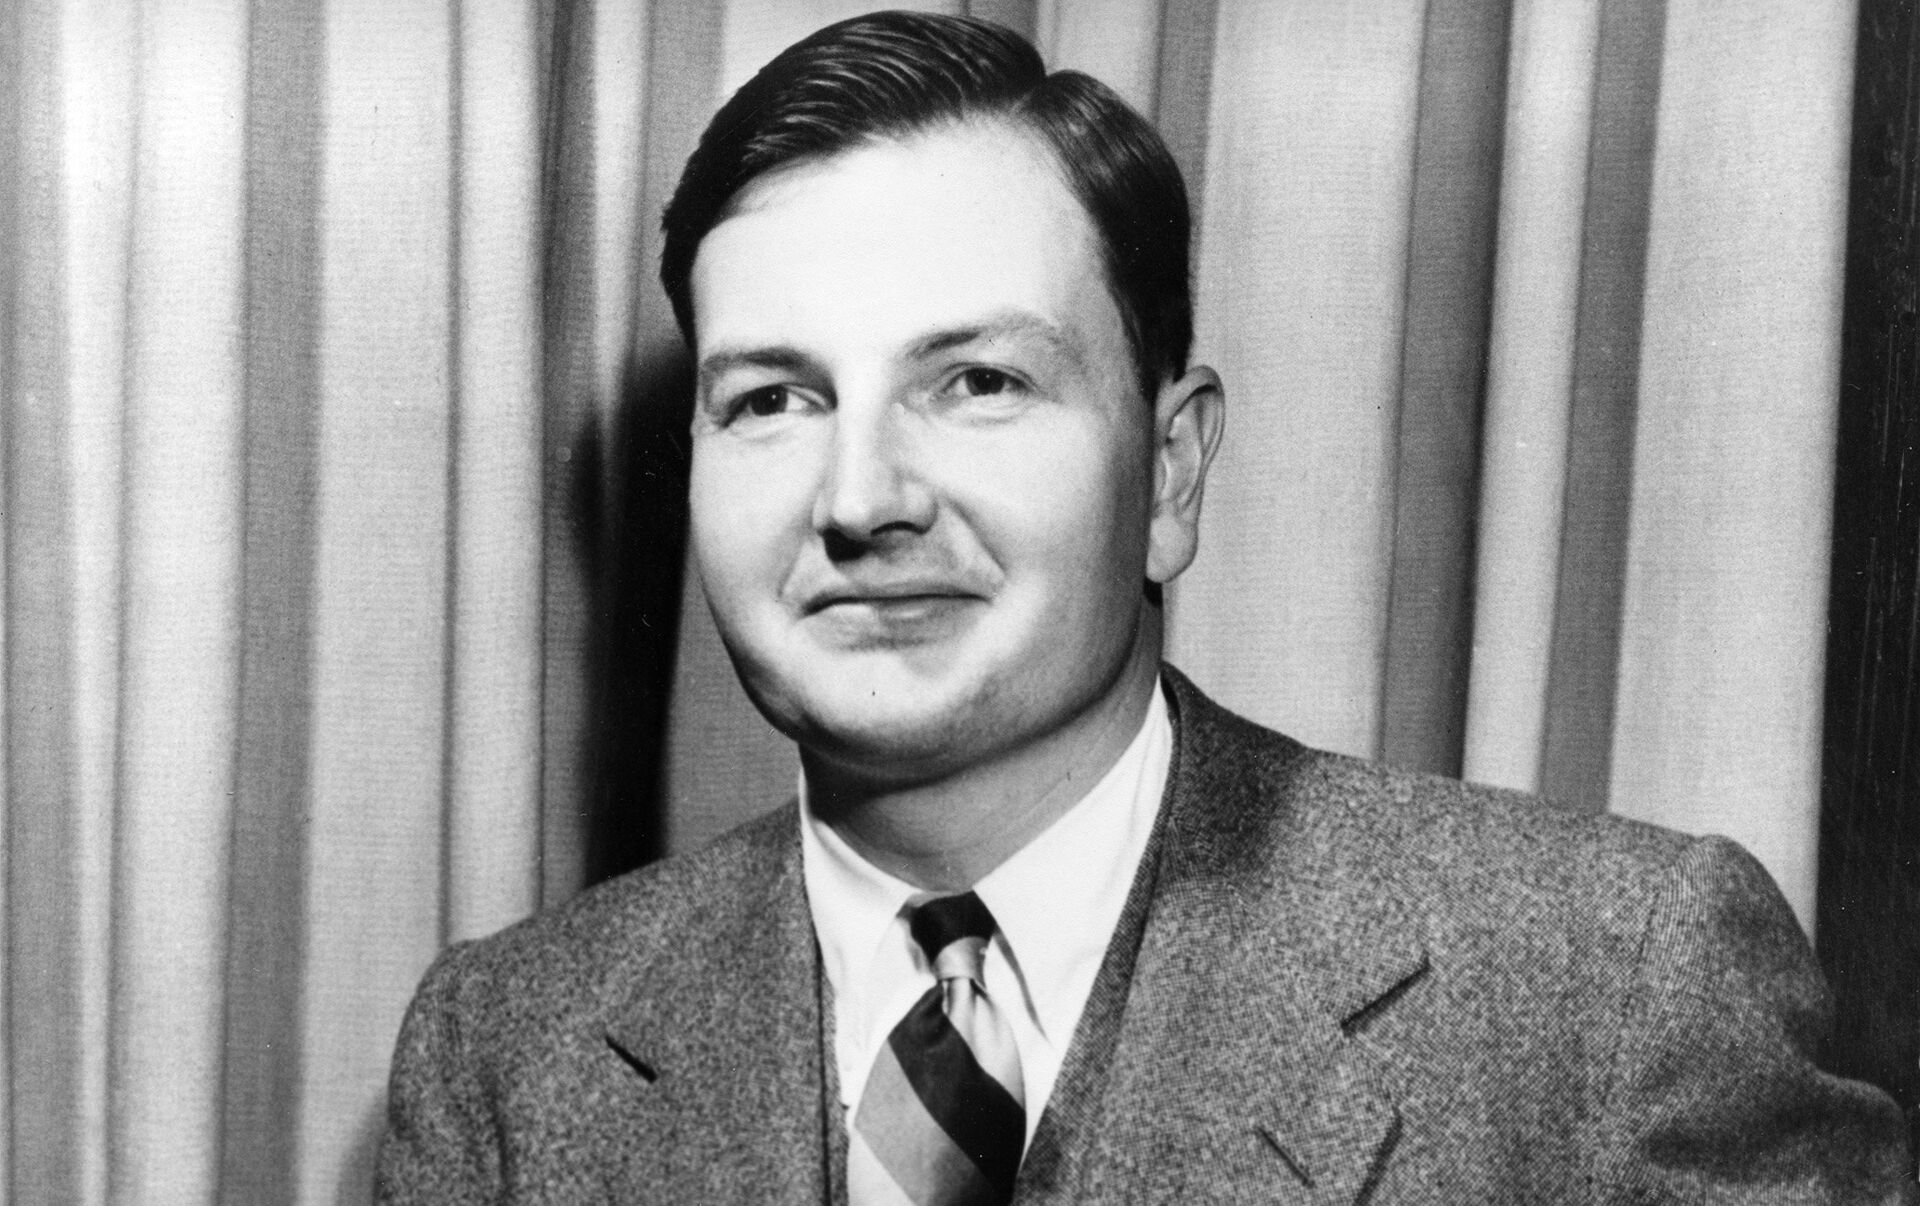 Banqueiro Americano David Rockefeller morre aos 101 anos